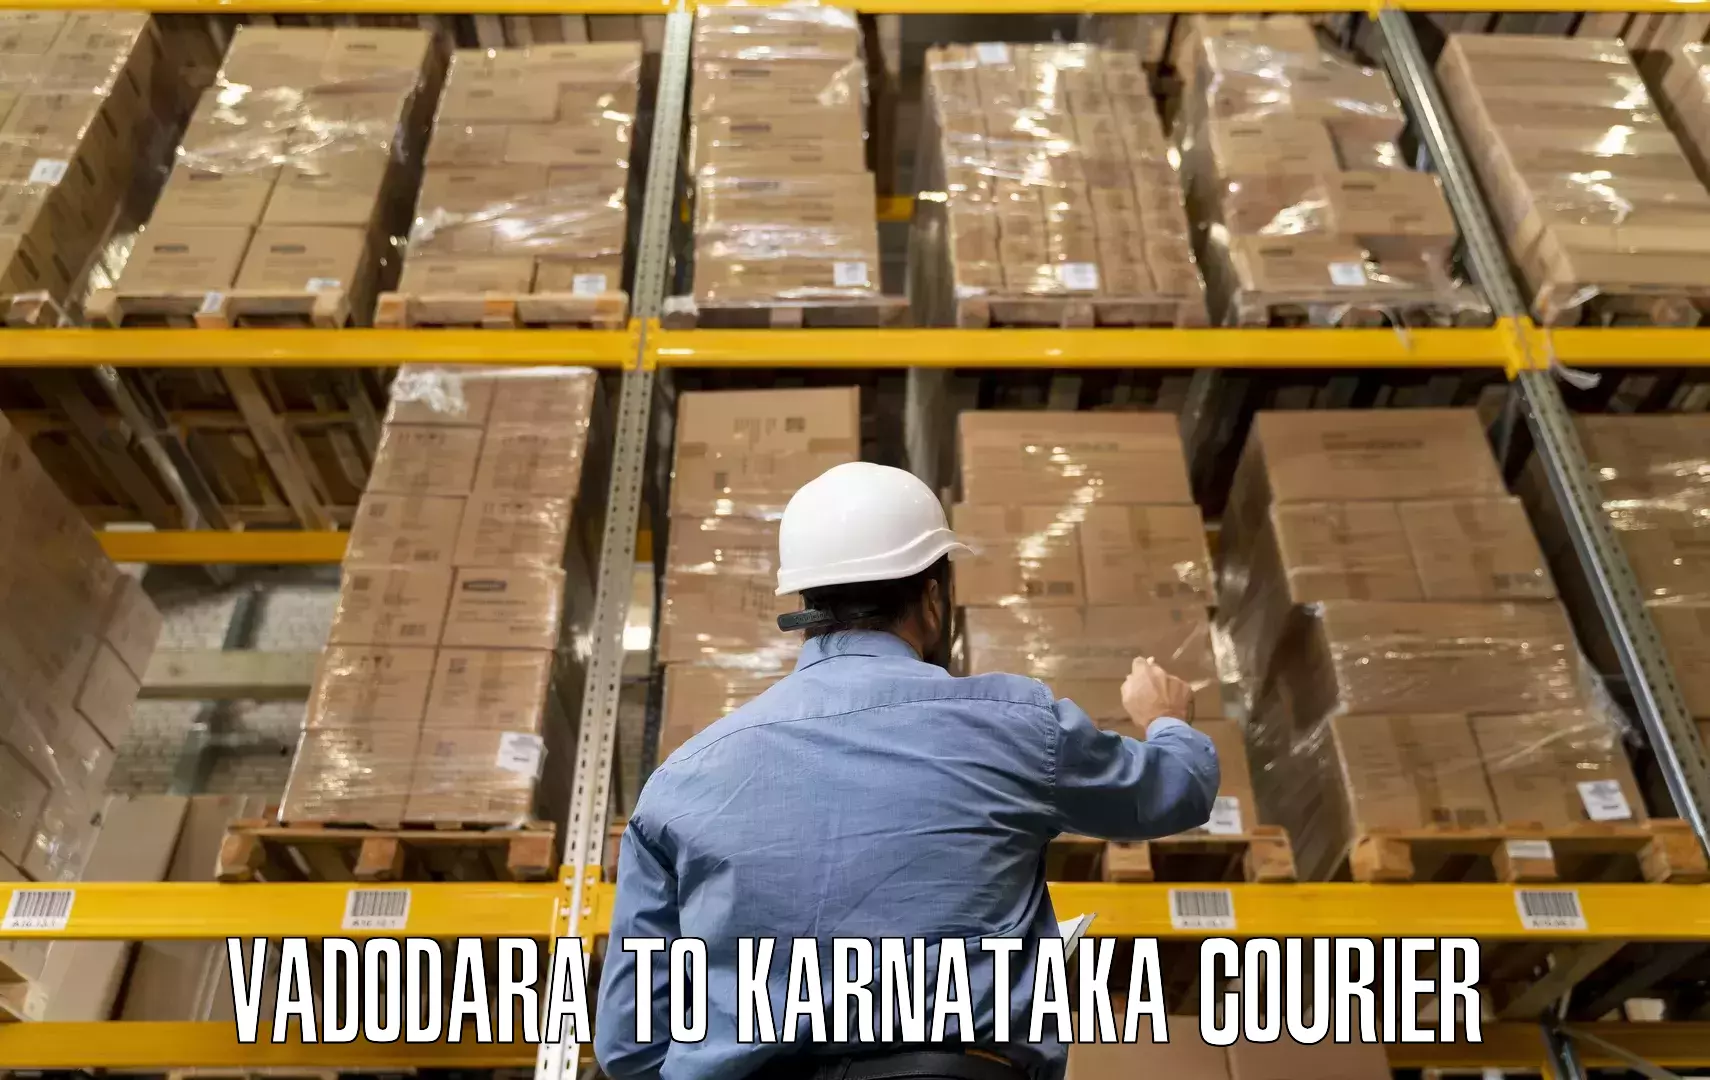 Furniture moving plans Vadodara to Karnataka